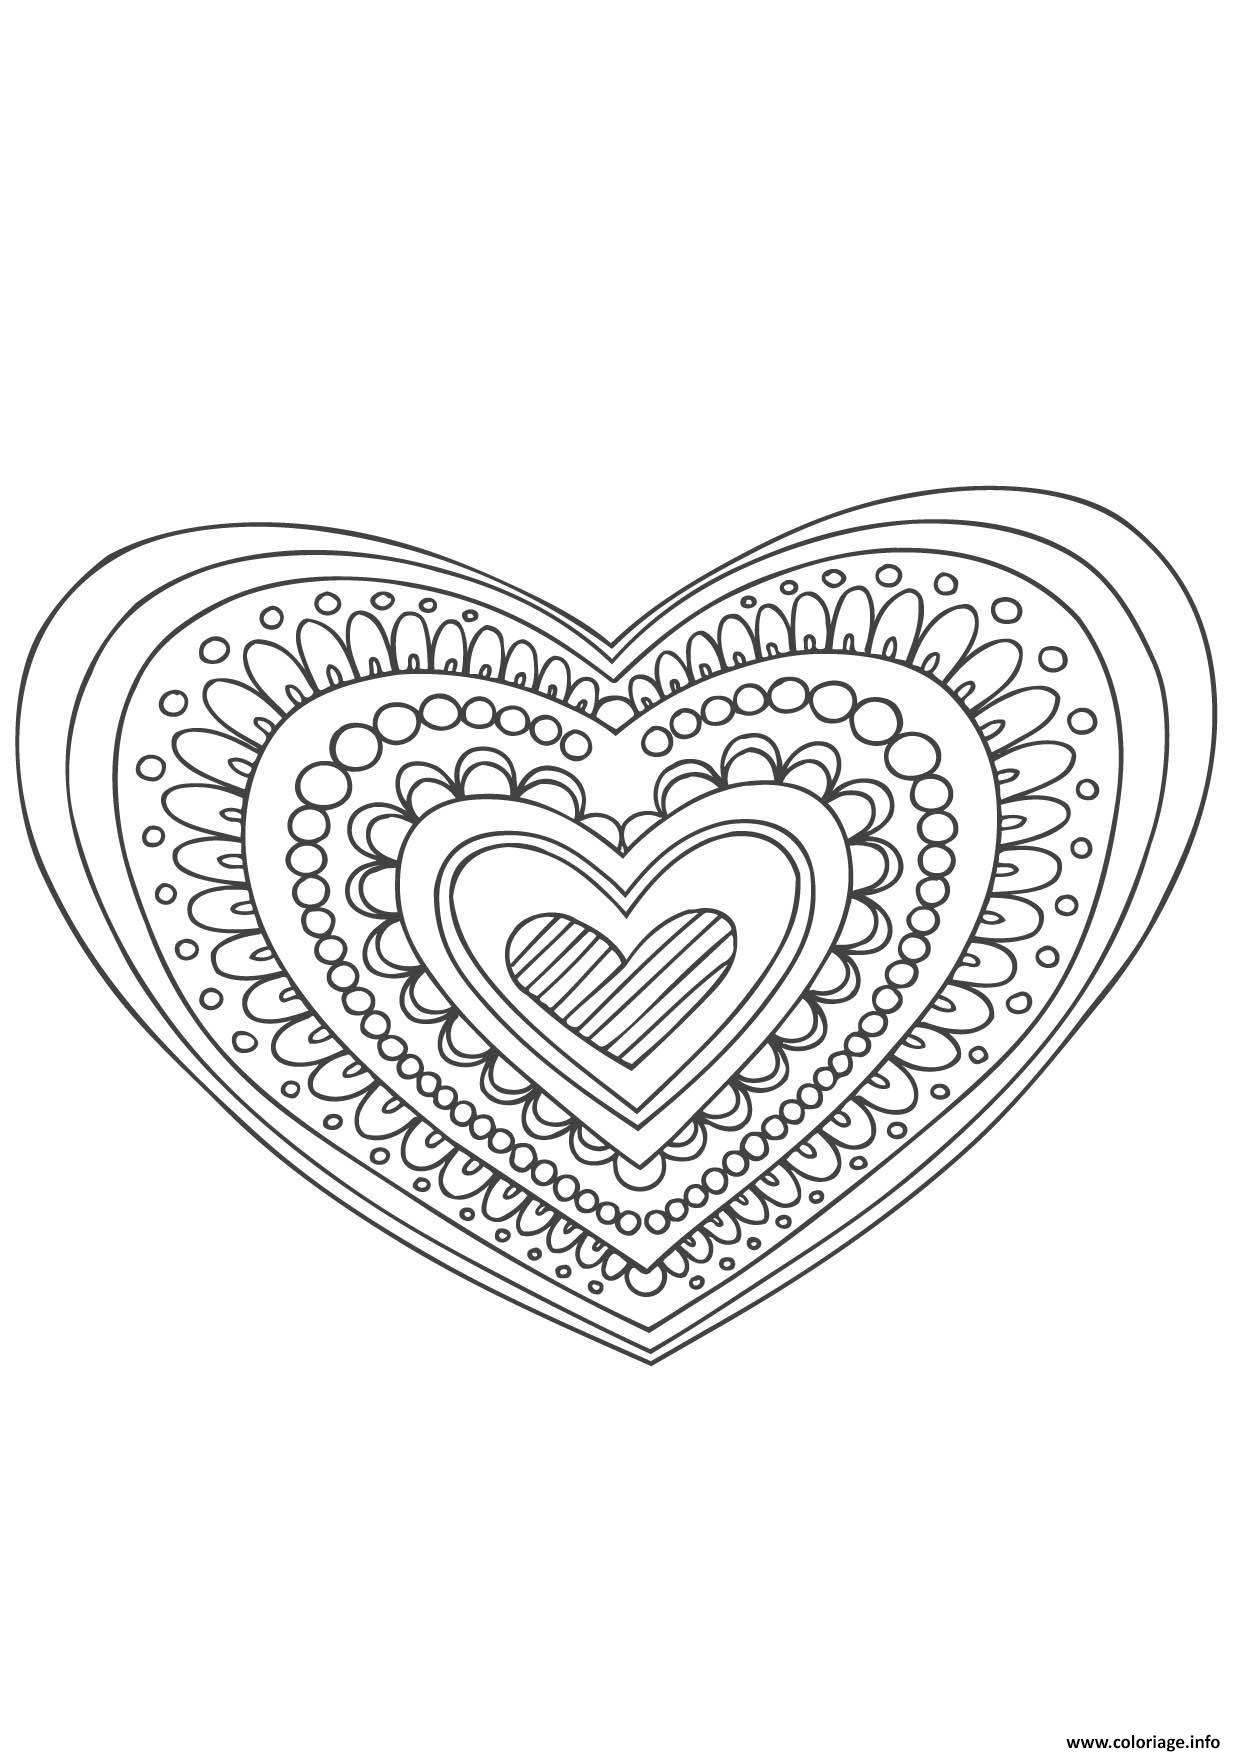 Coloriage Gulli Mandala Coeur Dessin à Imprimer